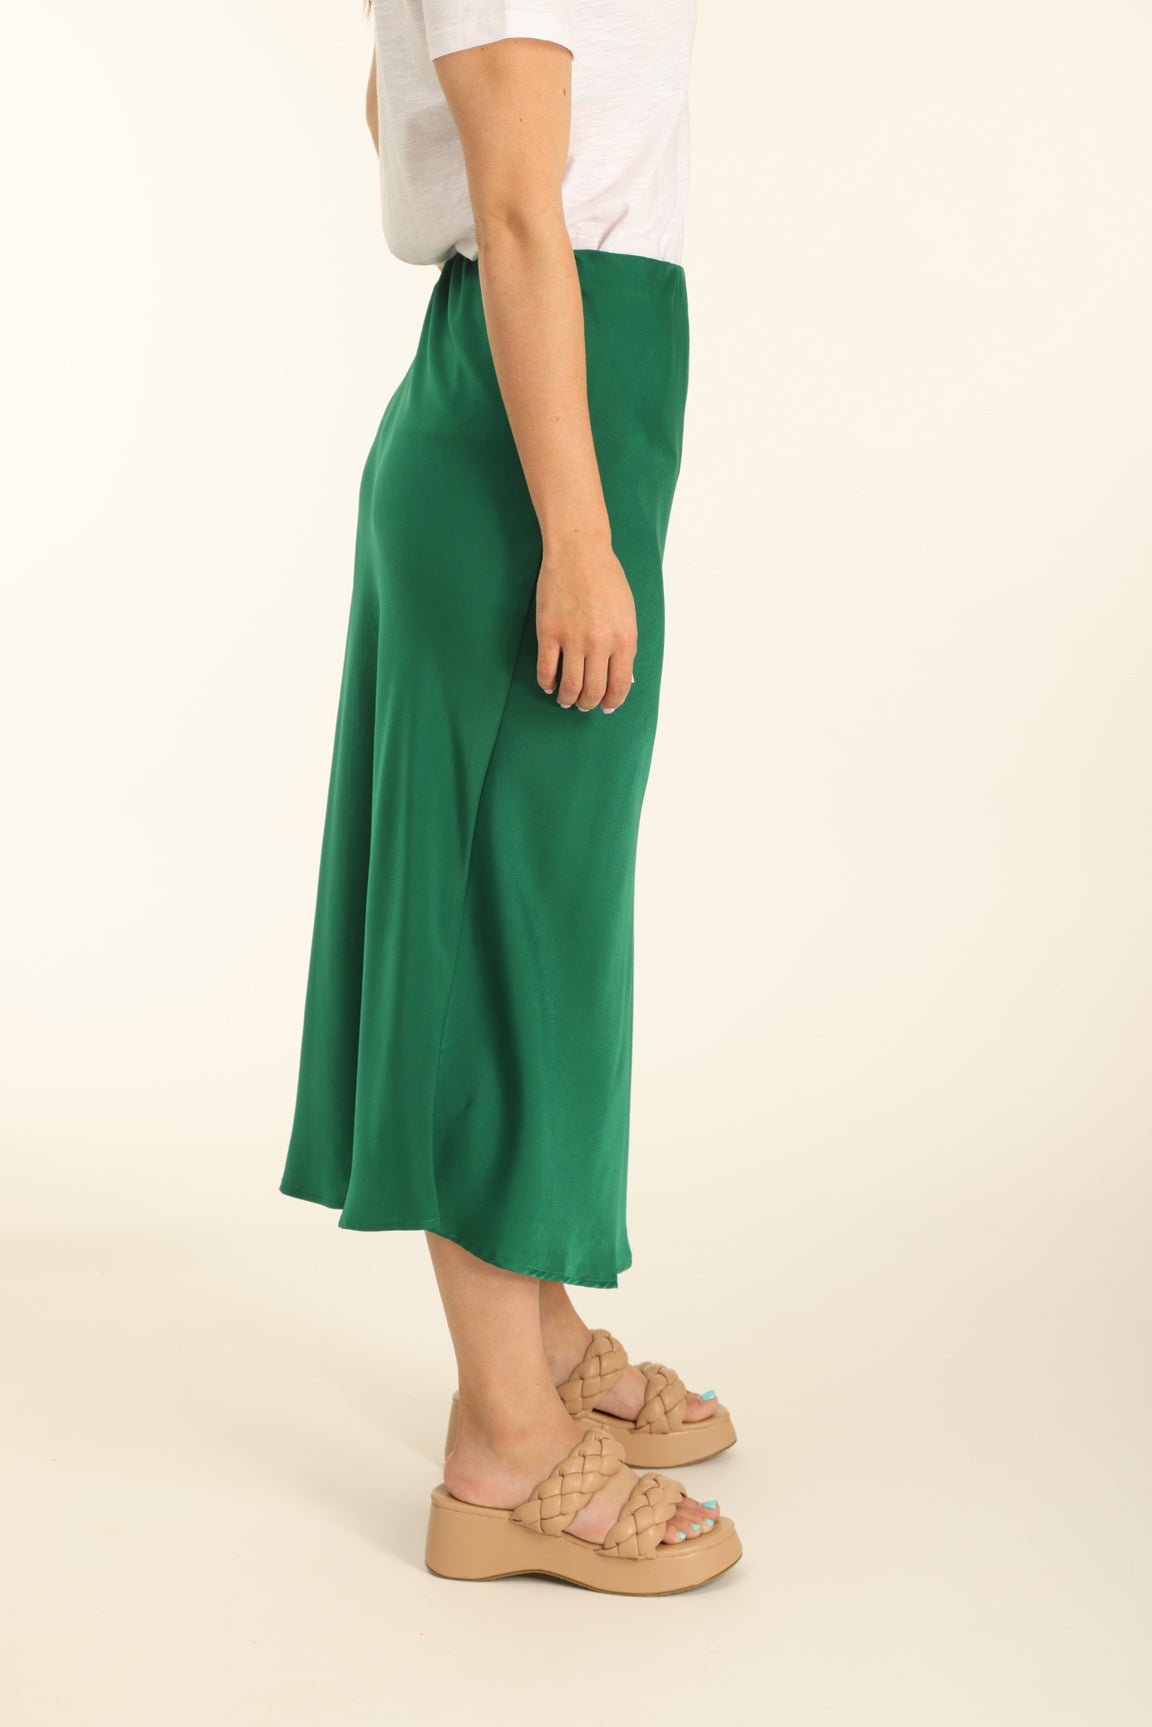 Finery Evelyn Satin Slip Midi Skirt, Green, 8